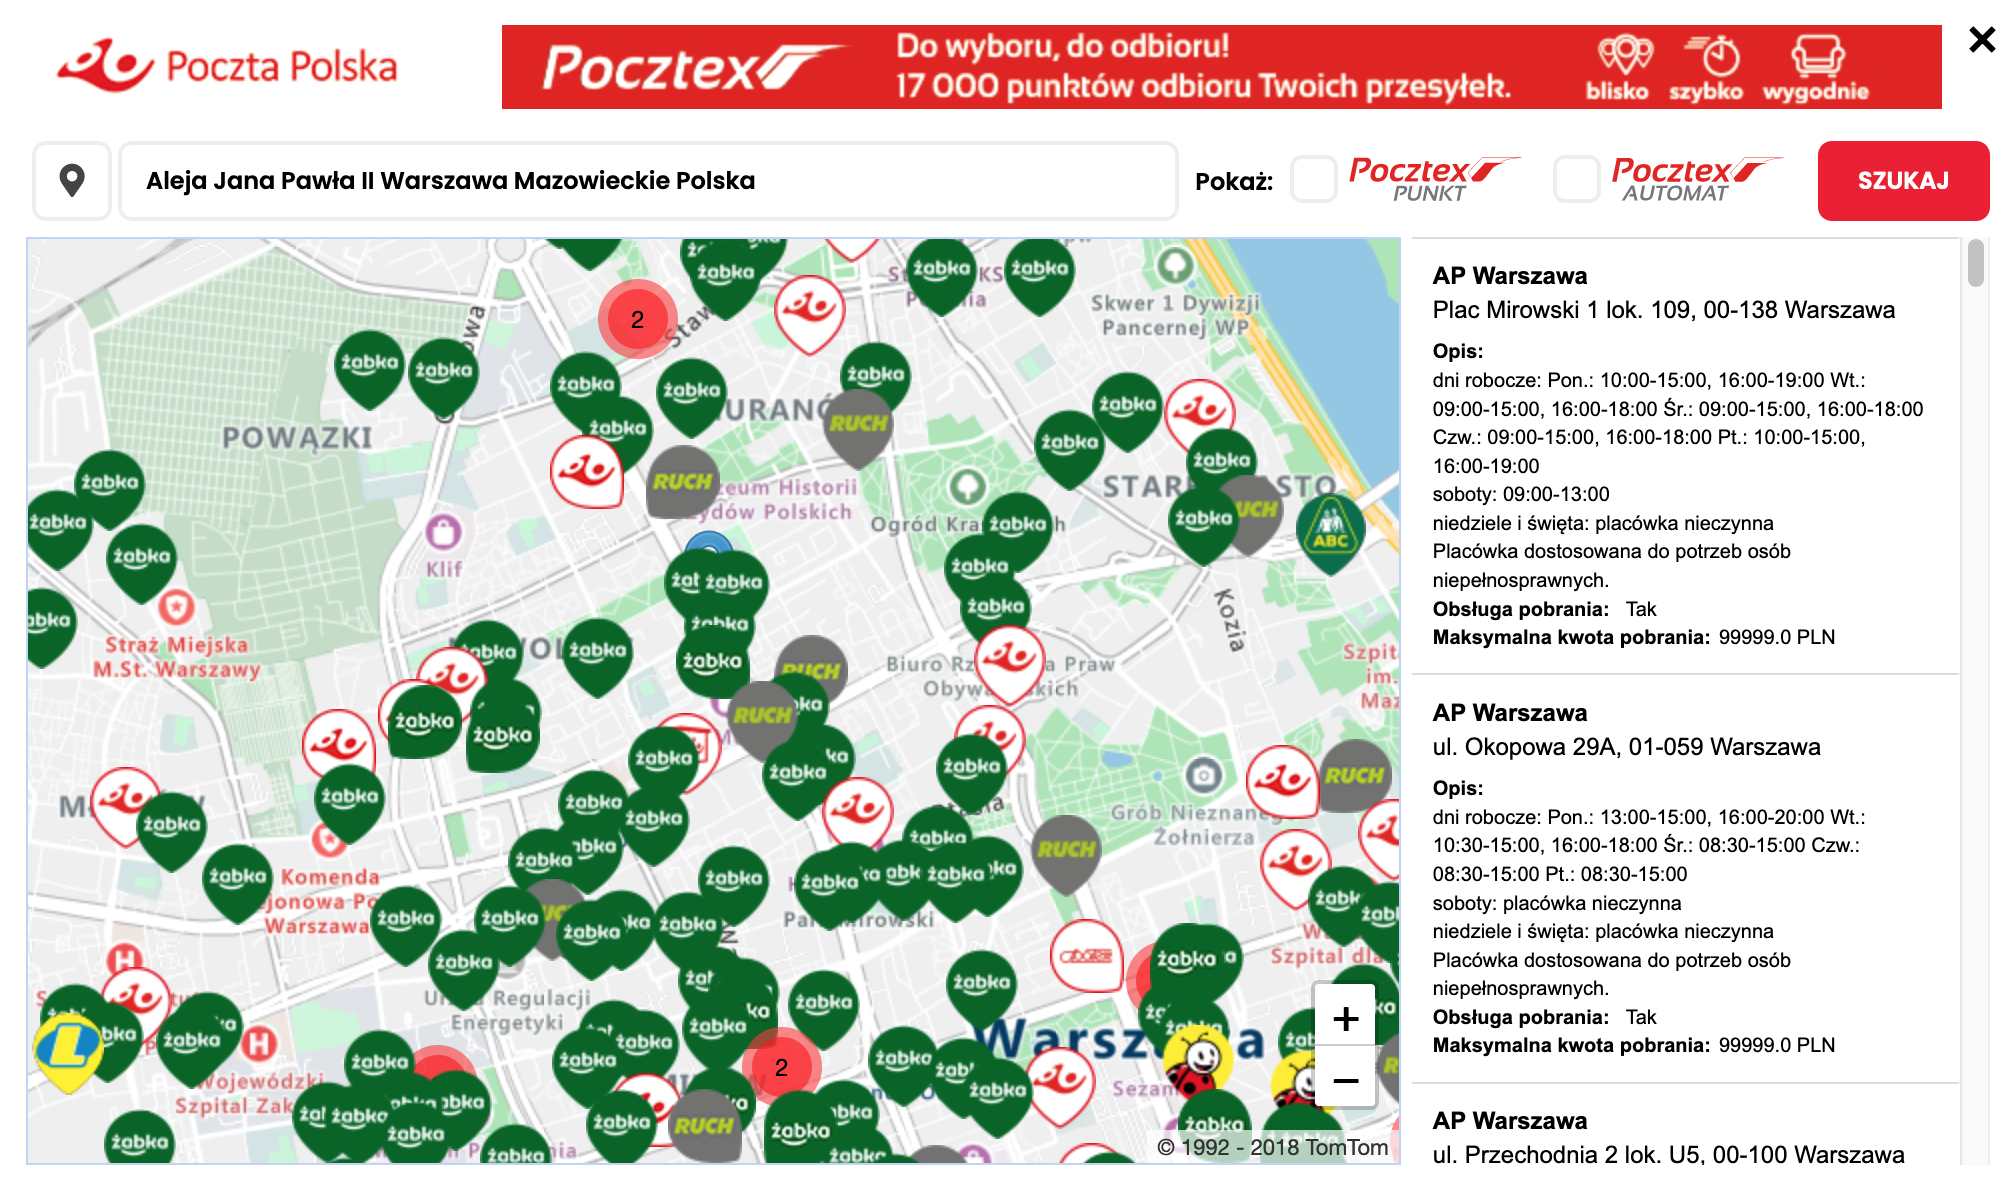 eNadawca Poczta Polska - Mapa punktów odbioru